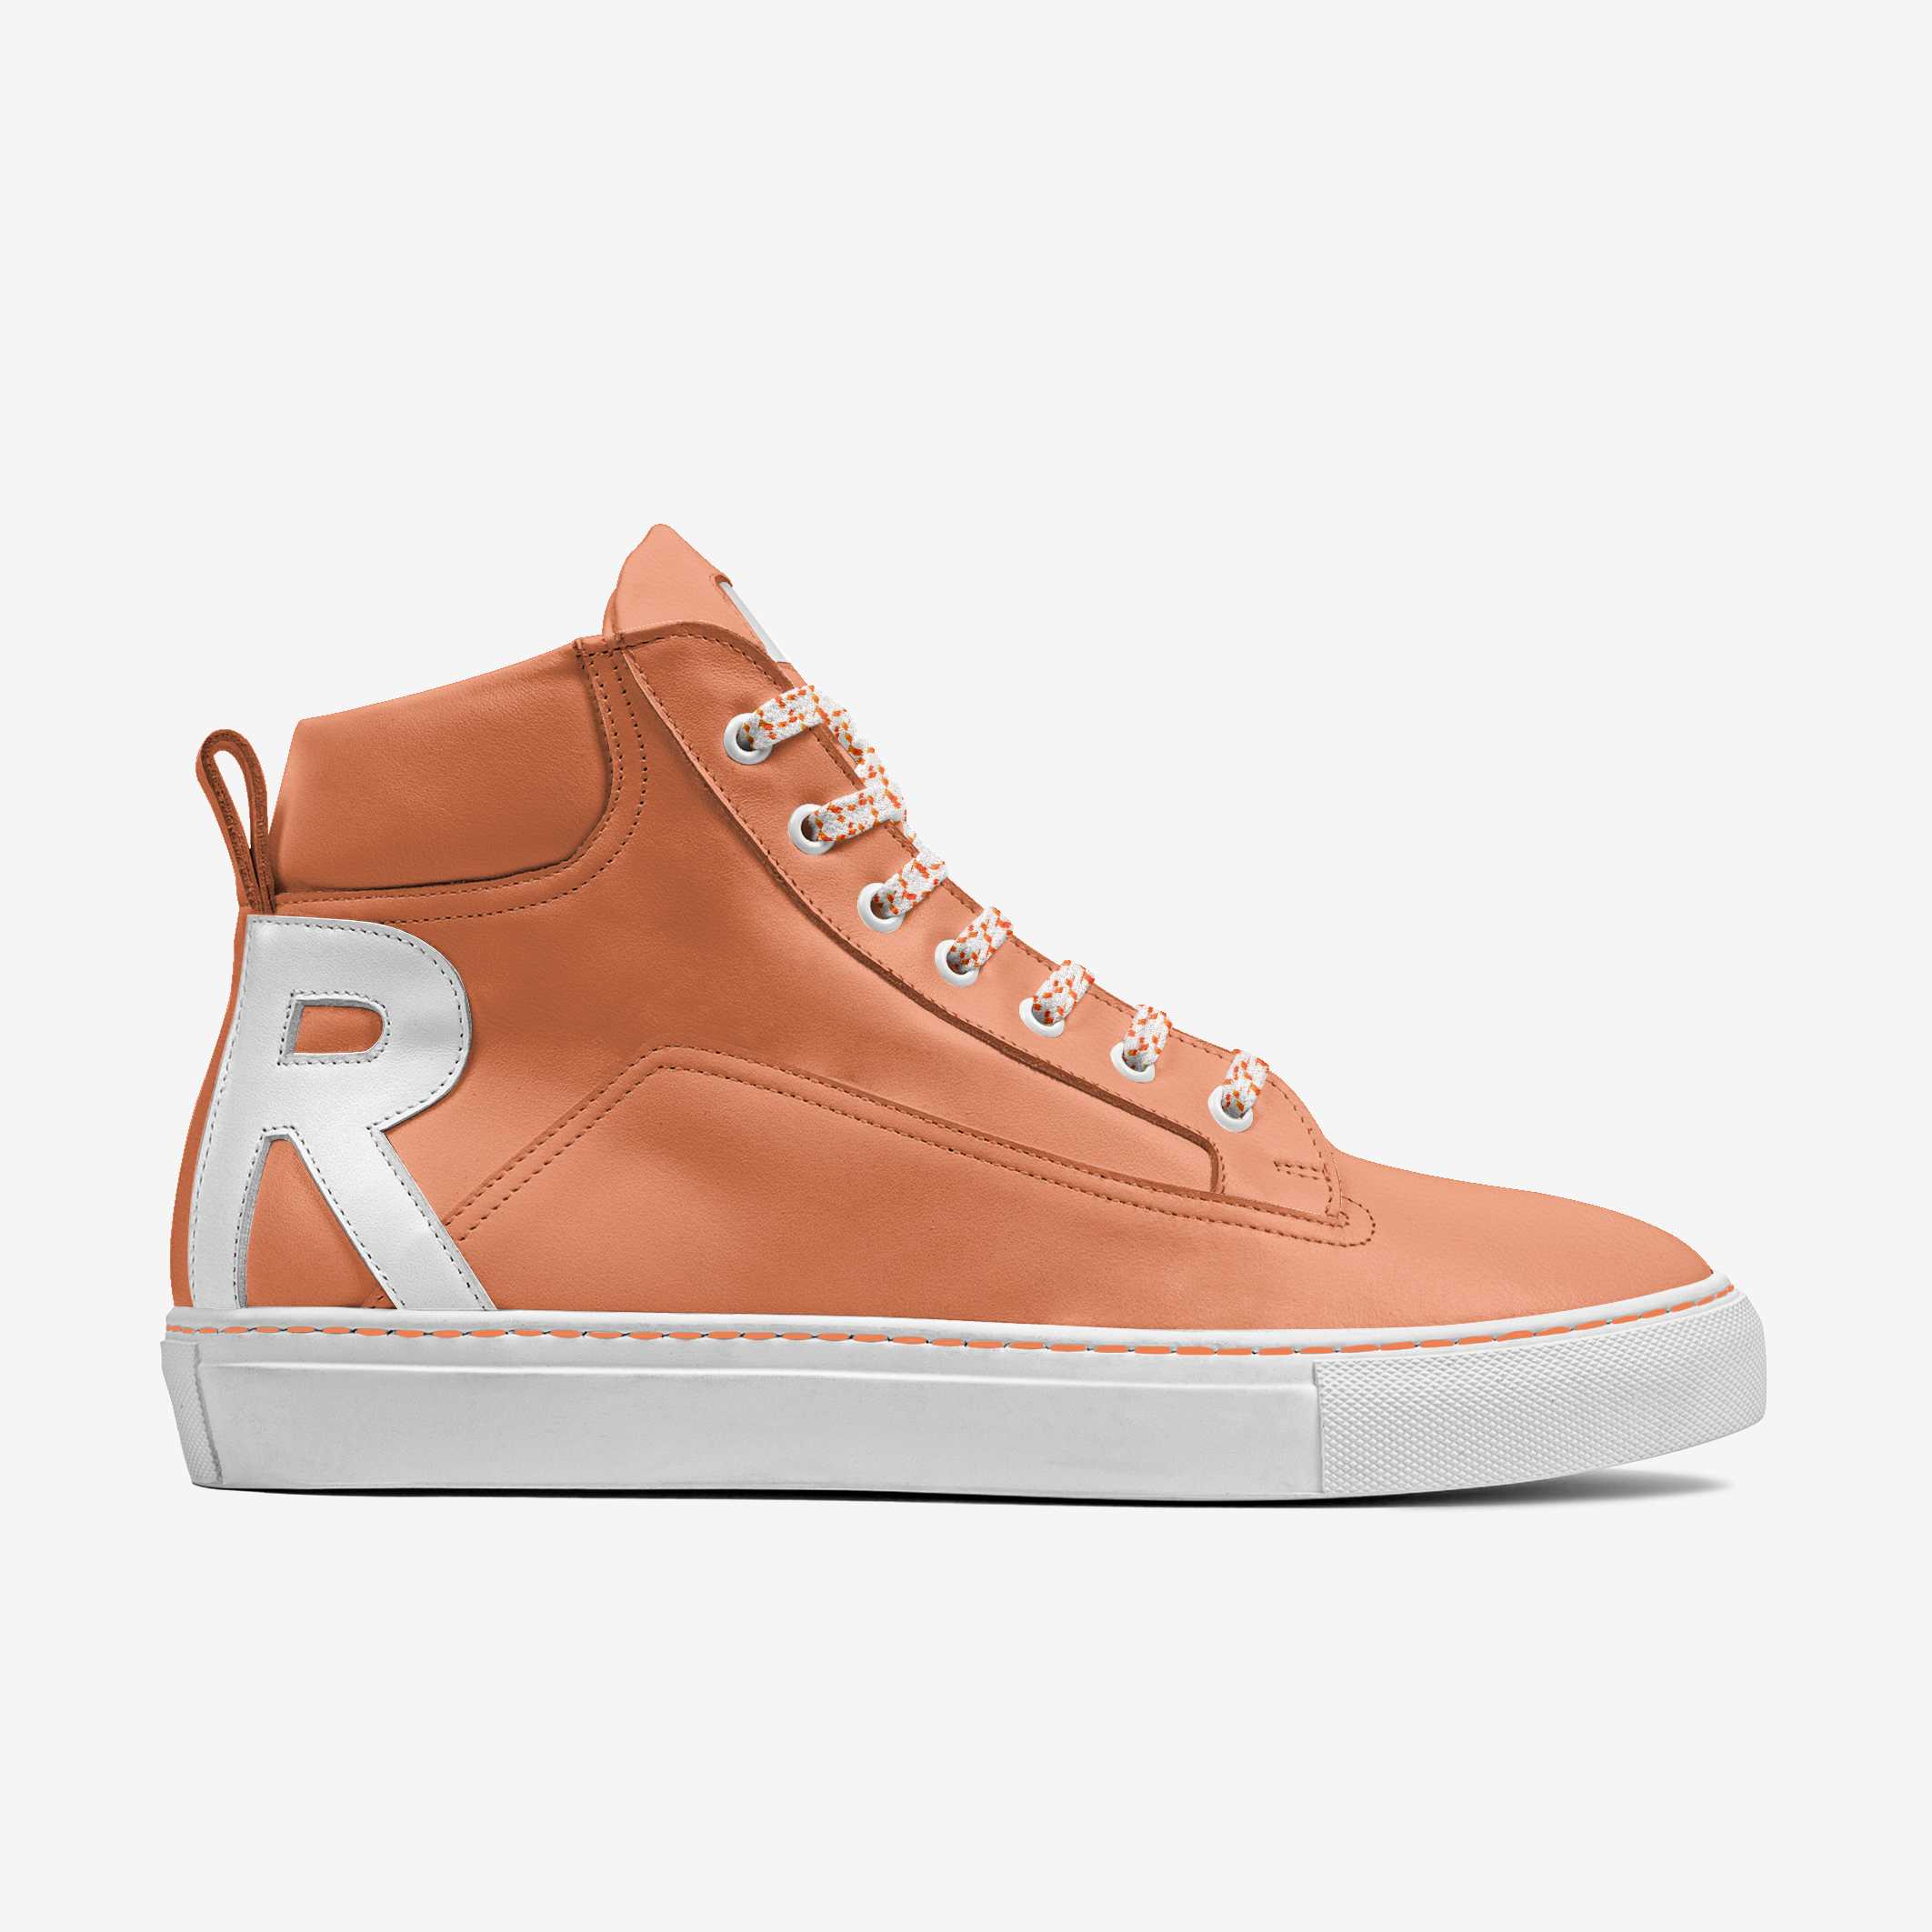 O.G. RIDDICK [Orange Leather] - Riddick Shoes Shoe Riddick Shoes   